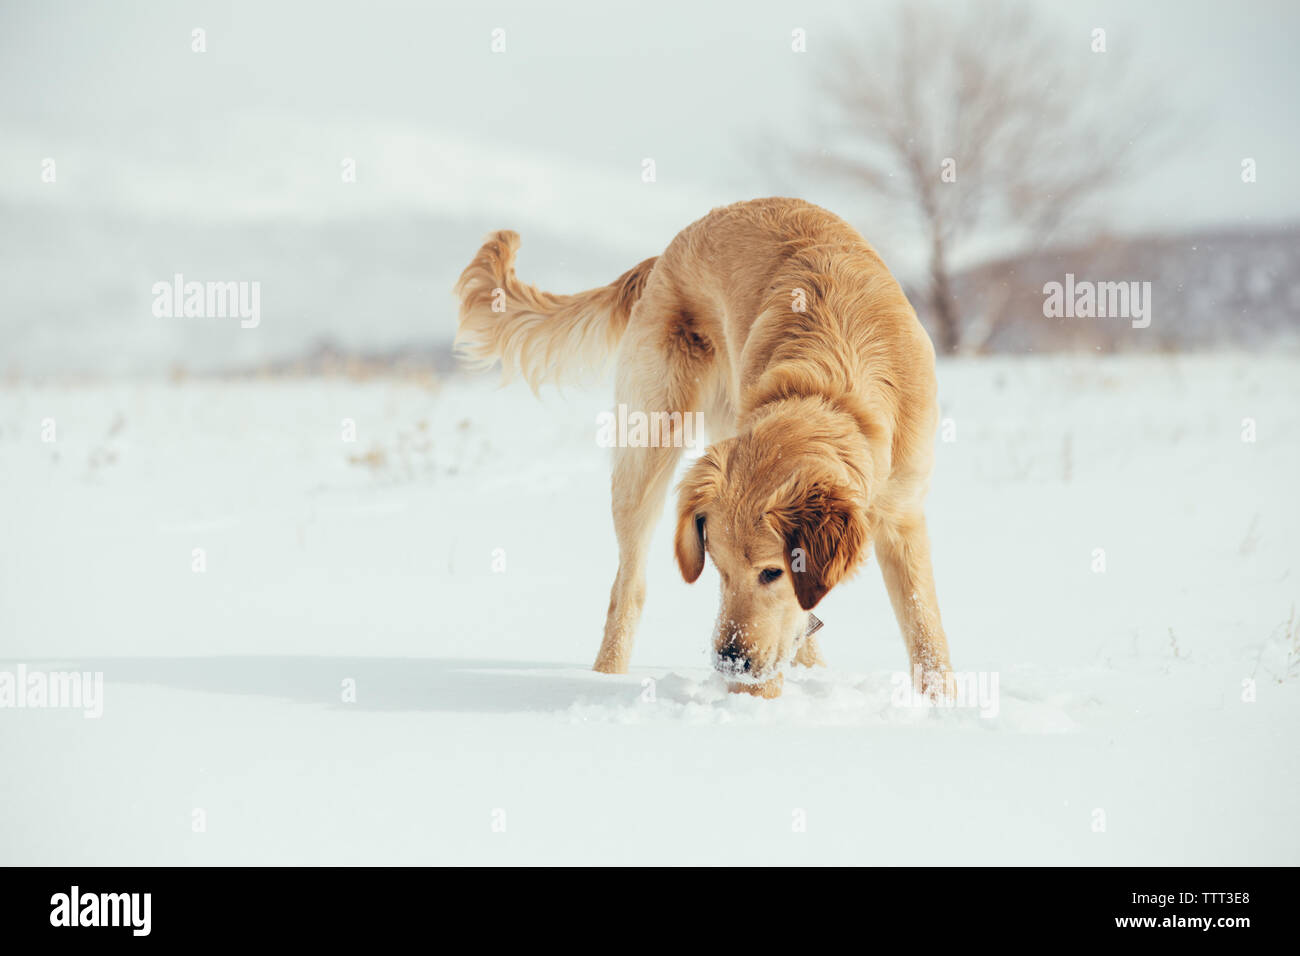 Chiot golden retriever jouant dans un champ neigeux Banque D'Images